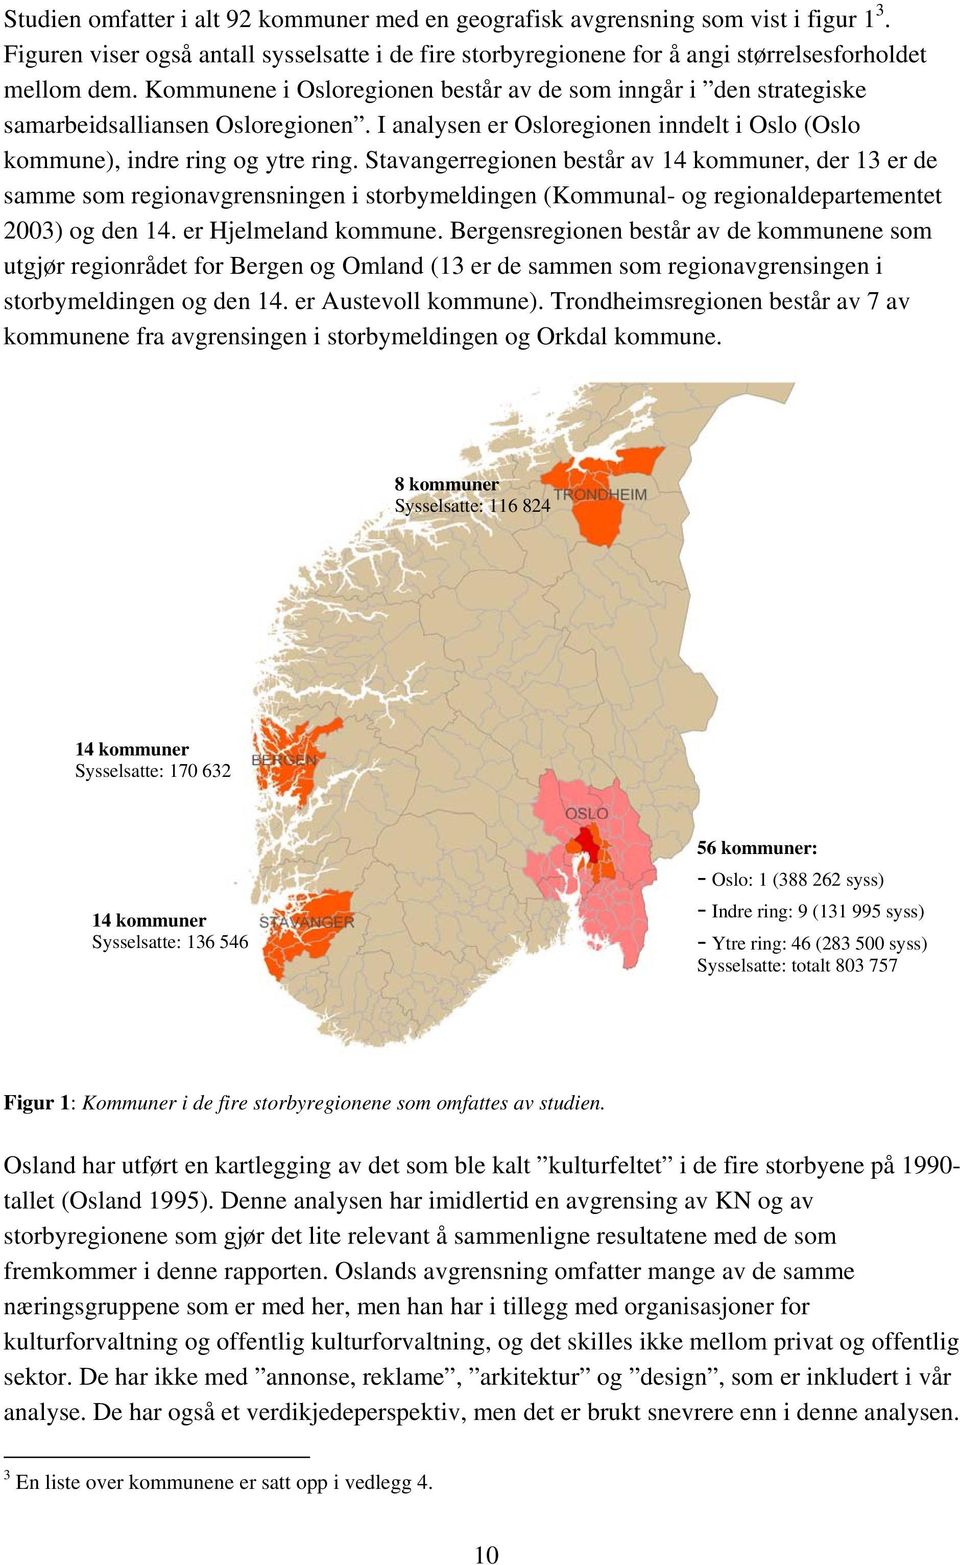 Stavangerregionen består av 14 kommuner, der 13 er de samme som regionavgrensningen i storbymeldingen (Kommunal- og regionaldepartementet 2003) og den 14. er Hjelmeland kommune.